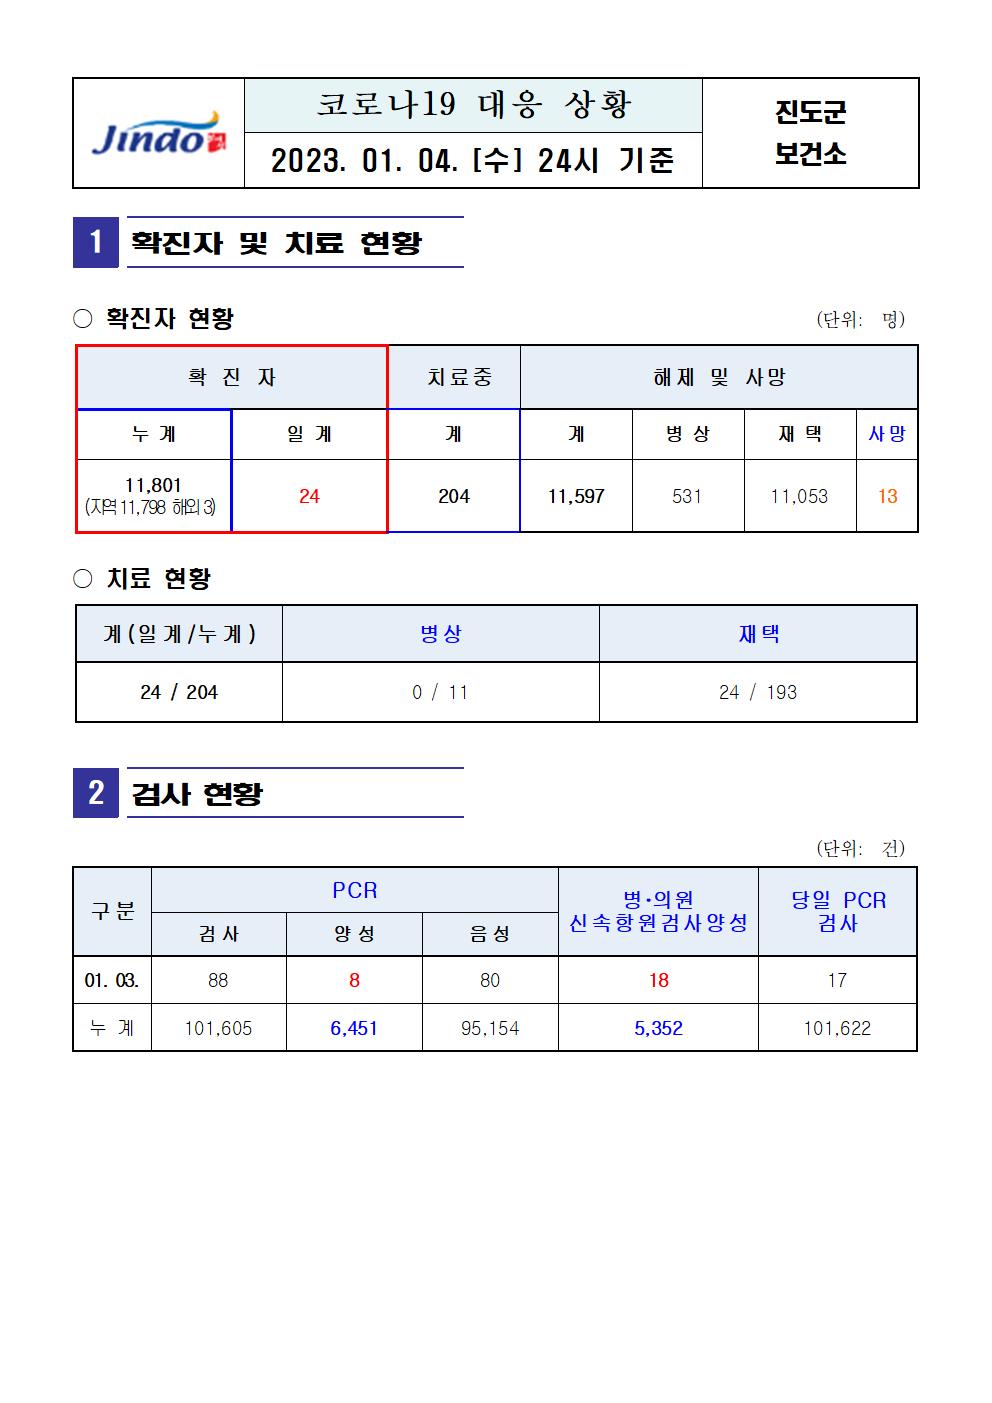 2023년 코로나 19 대응 일일상황보고(수정)(1월 4일 24시 기준) 첨부#1